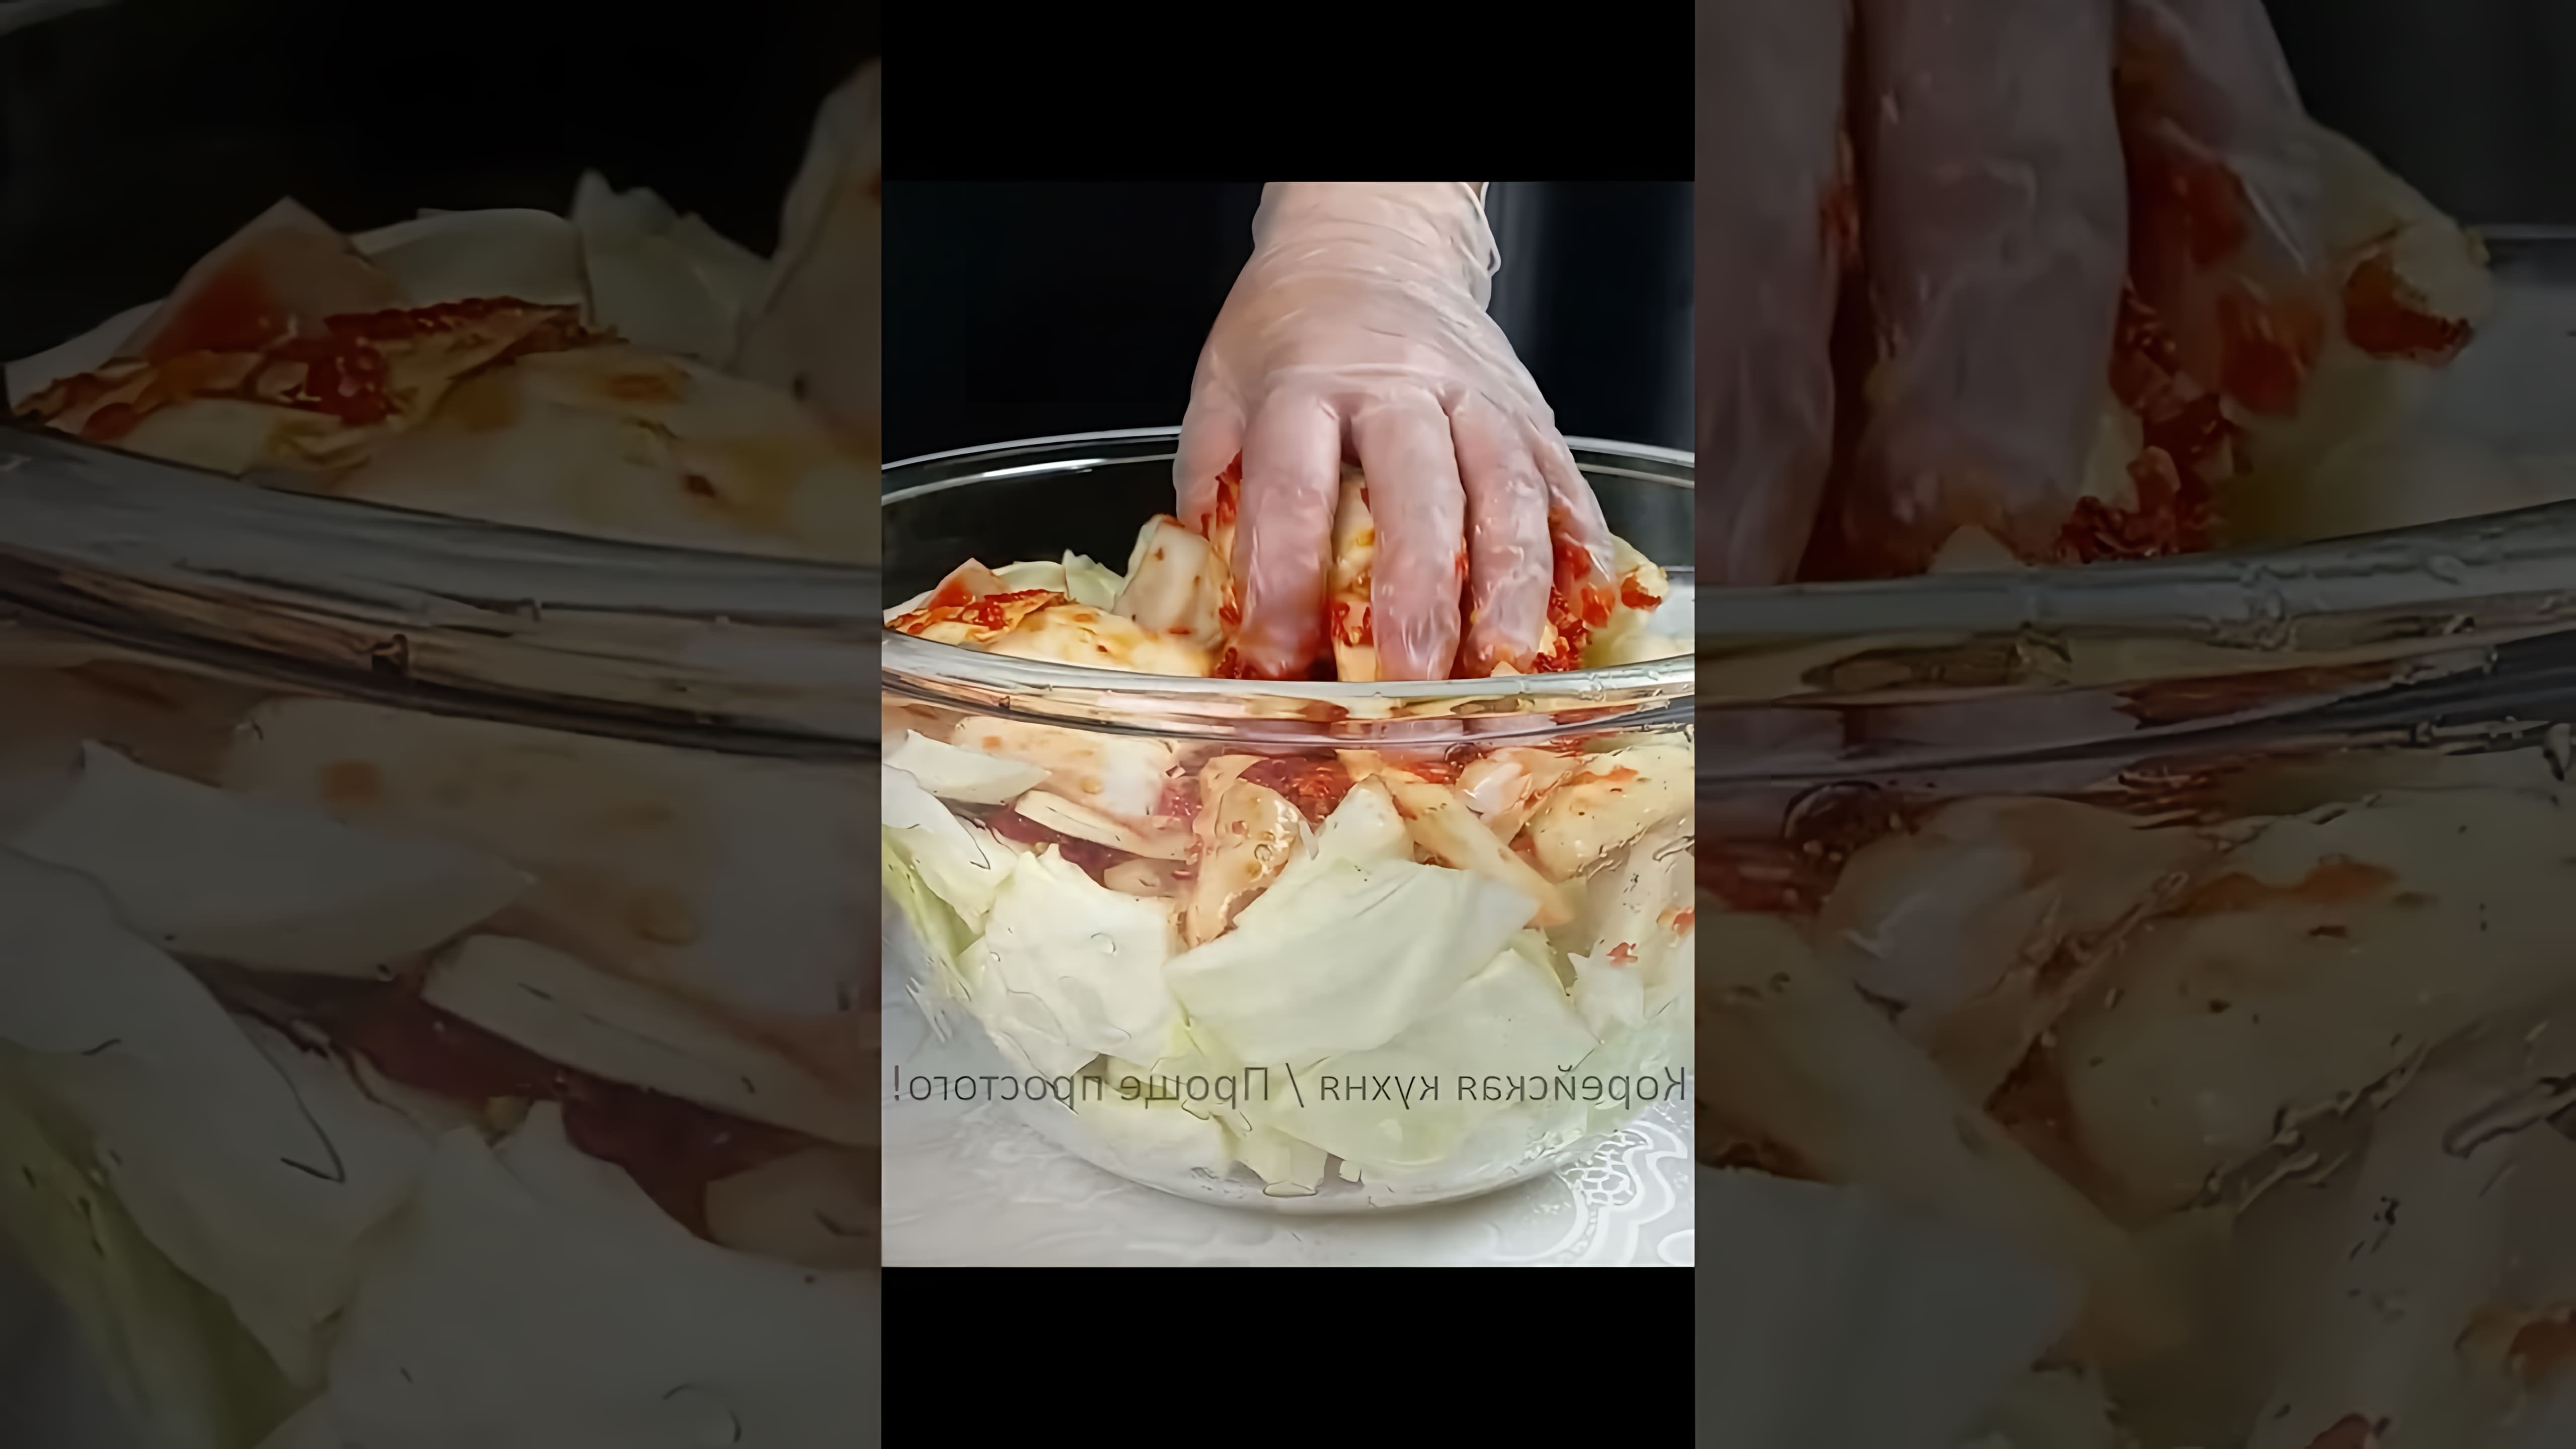 В этом видео демонстрируется процесс приготовления корейской закуски - чимчи из белокочанной капусты